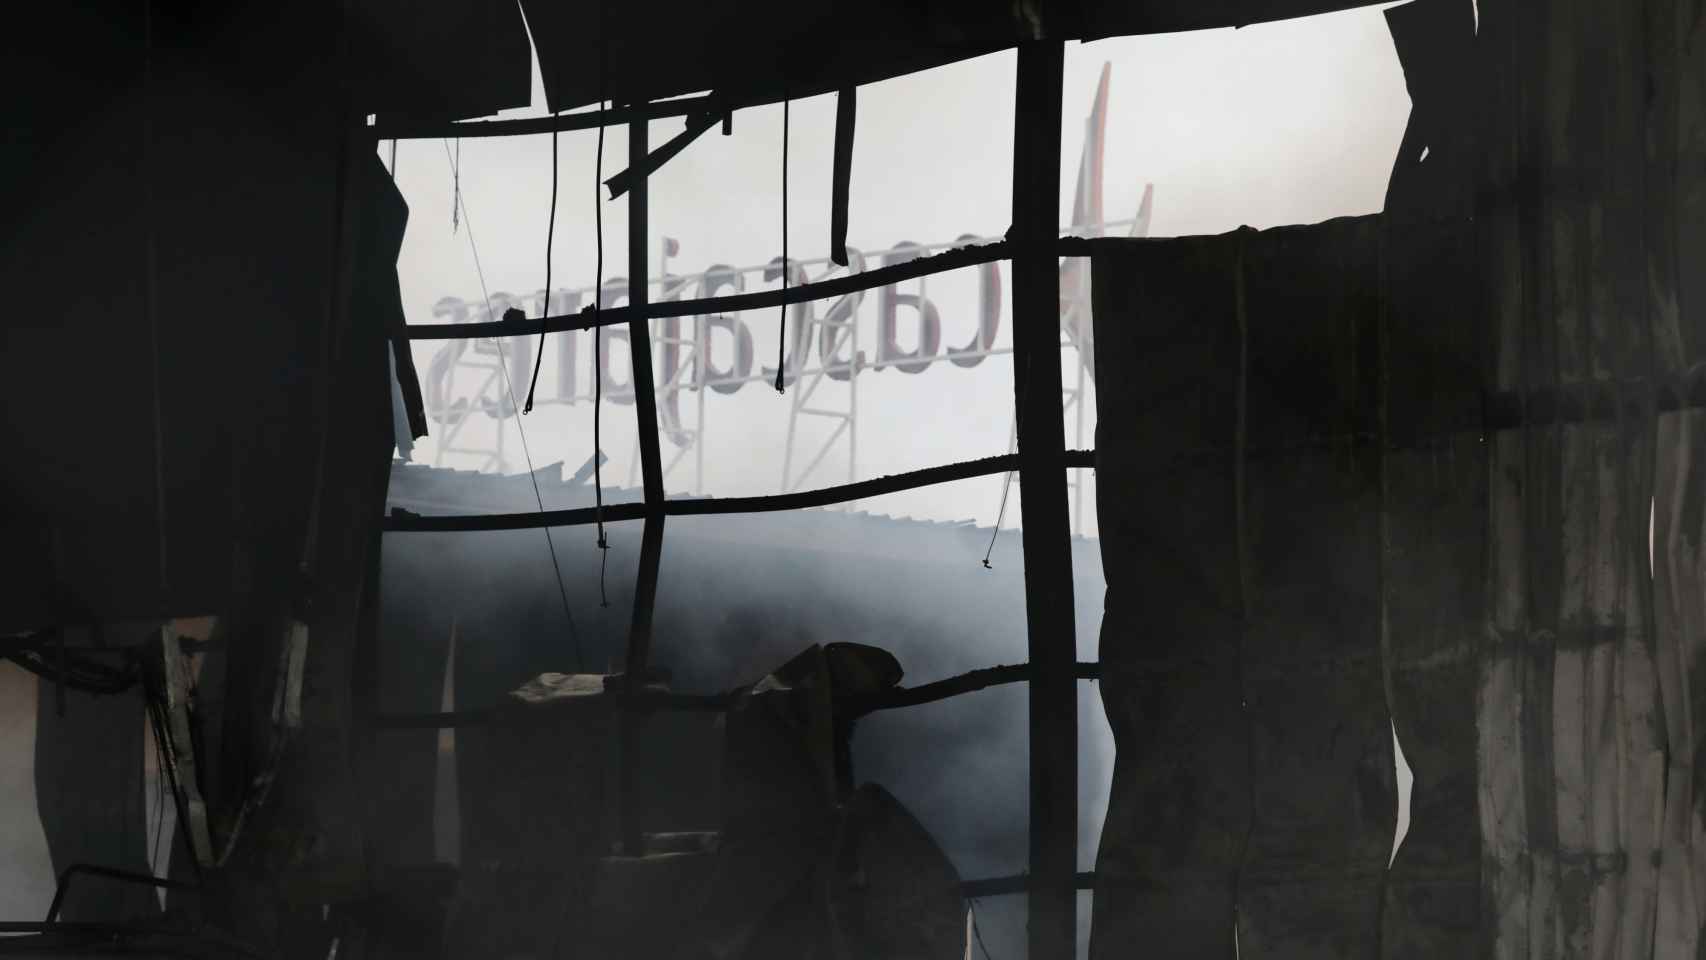 Imagen tomada tras el incendio en la que puede verse cómo sobrevivió al mismo el cartel con el logo de la empresa